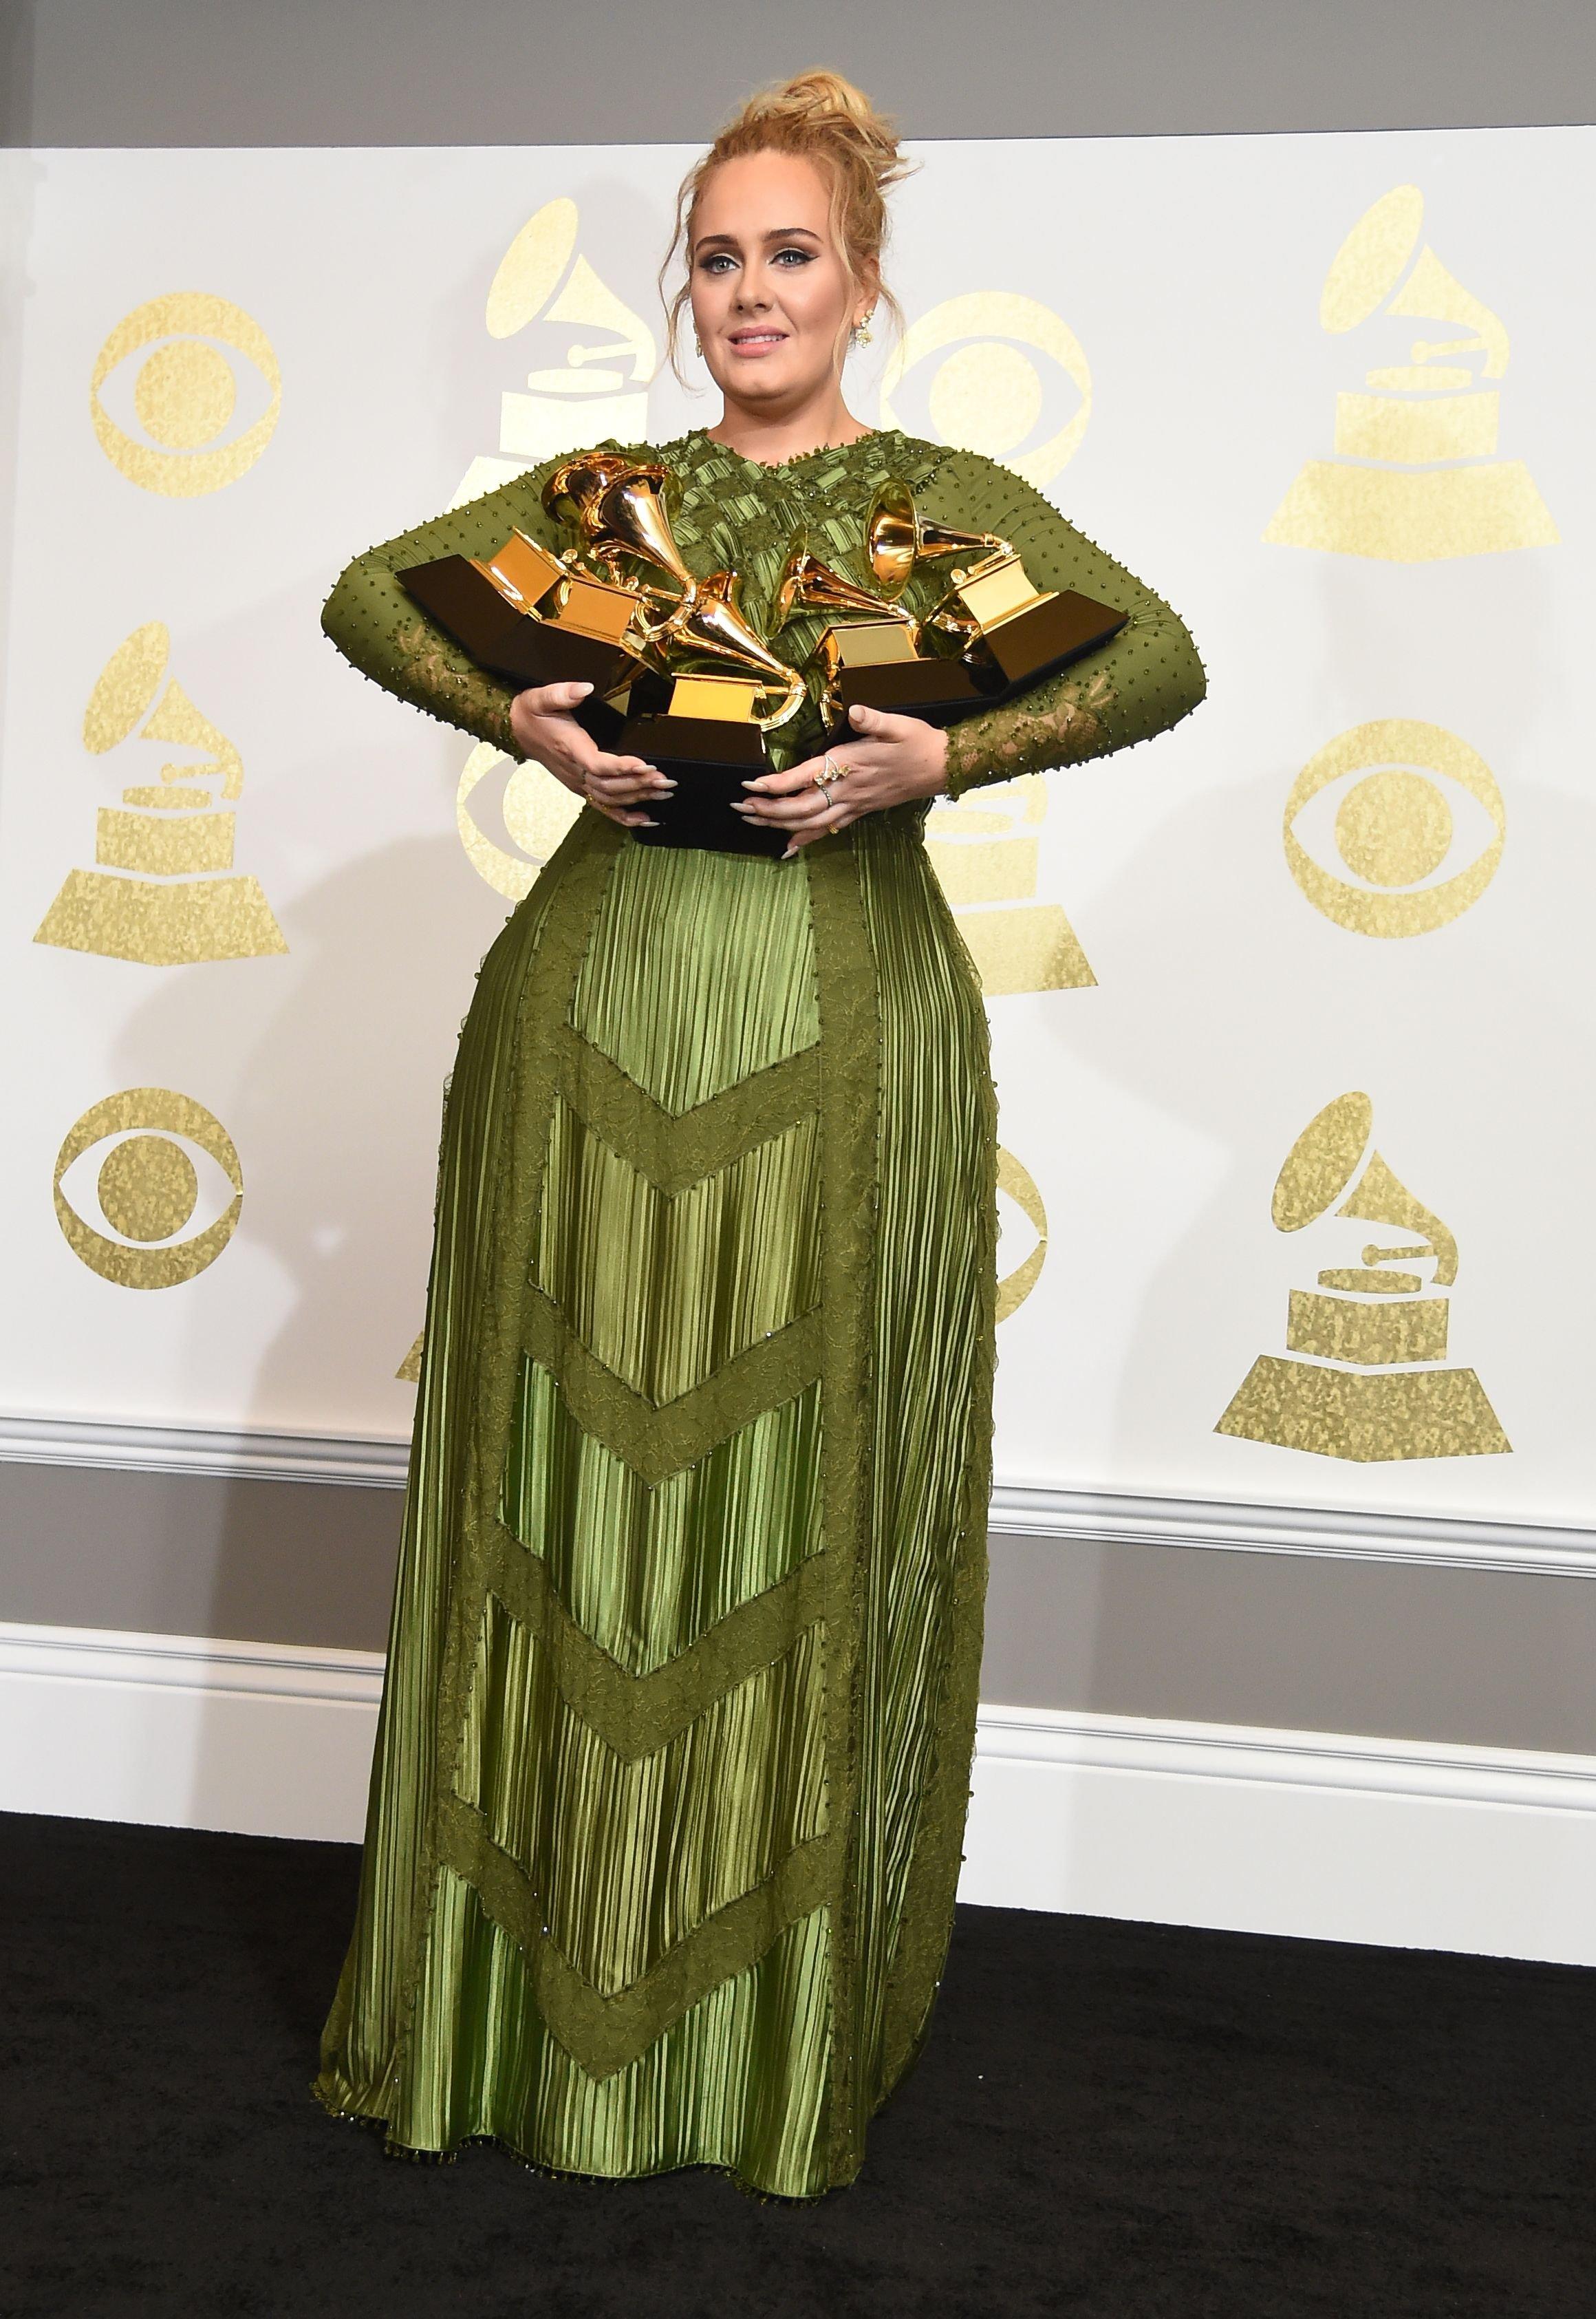 Adele holding GRAMMY Awards